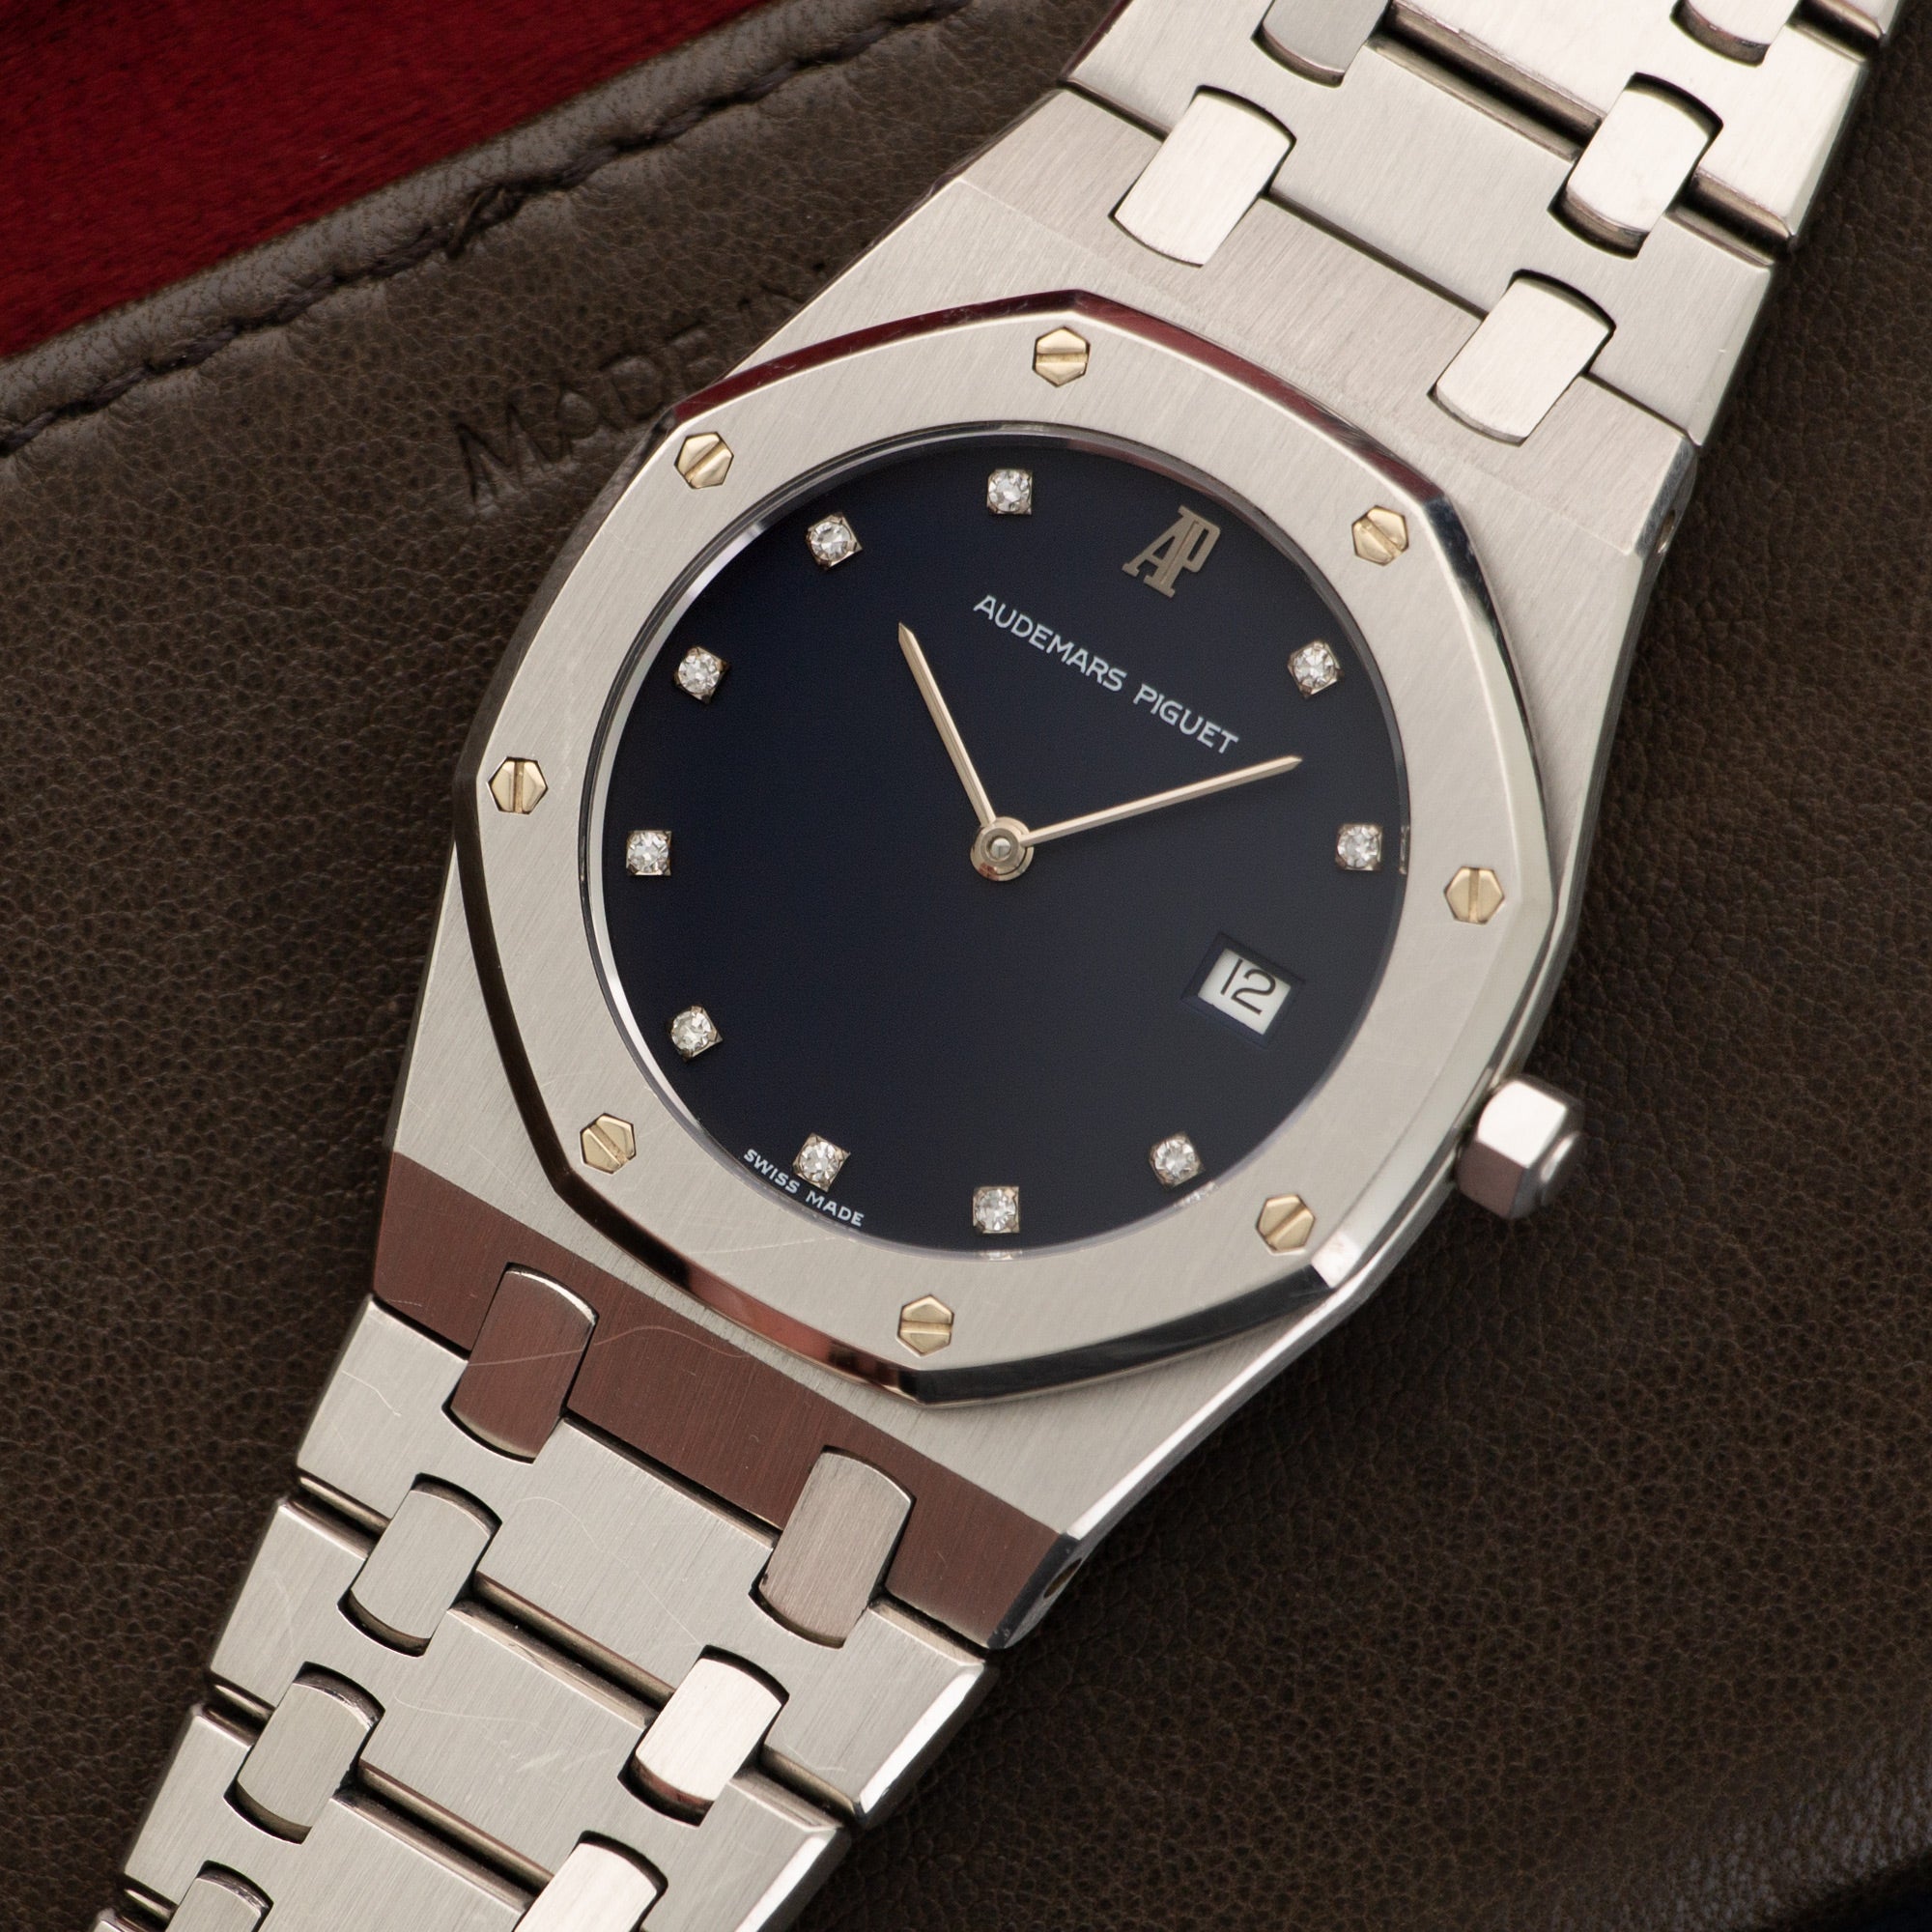 Audemars Piguet - Audemars Piguet Platinum Royal Oak Diamond Watch Ref. 56175 - The Keystone Watches